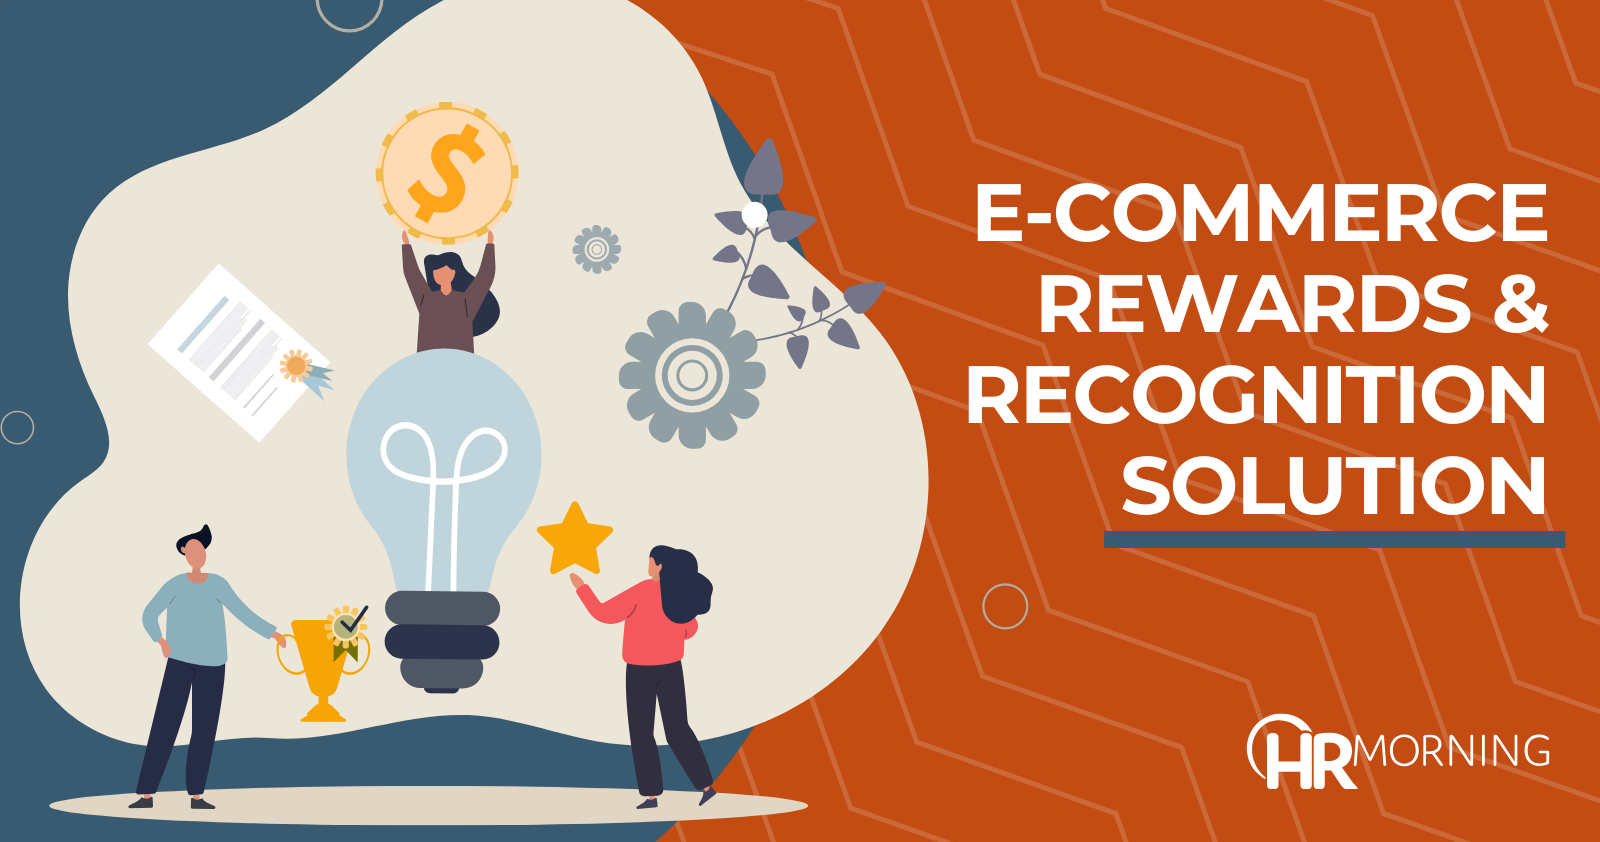 E-commerce rewards & recognition solution